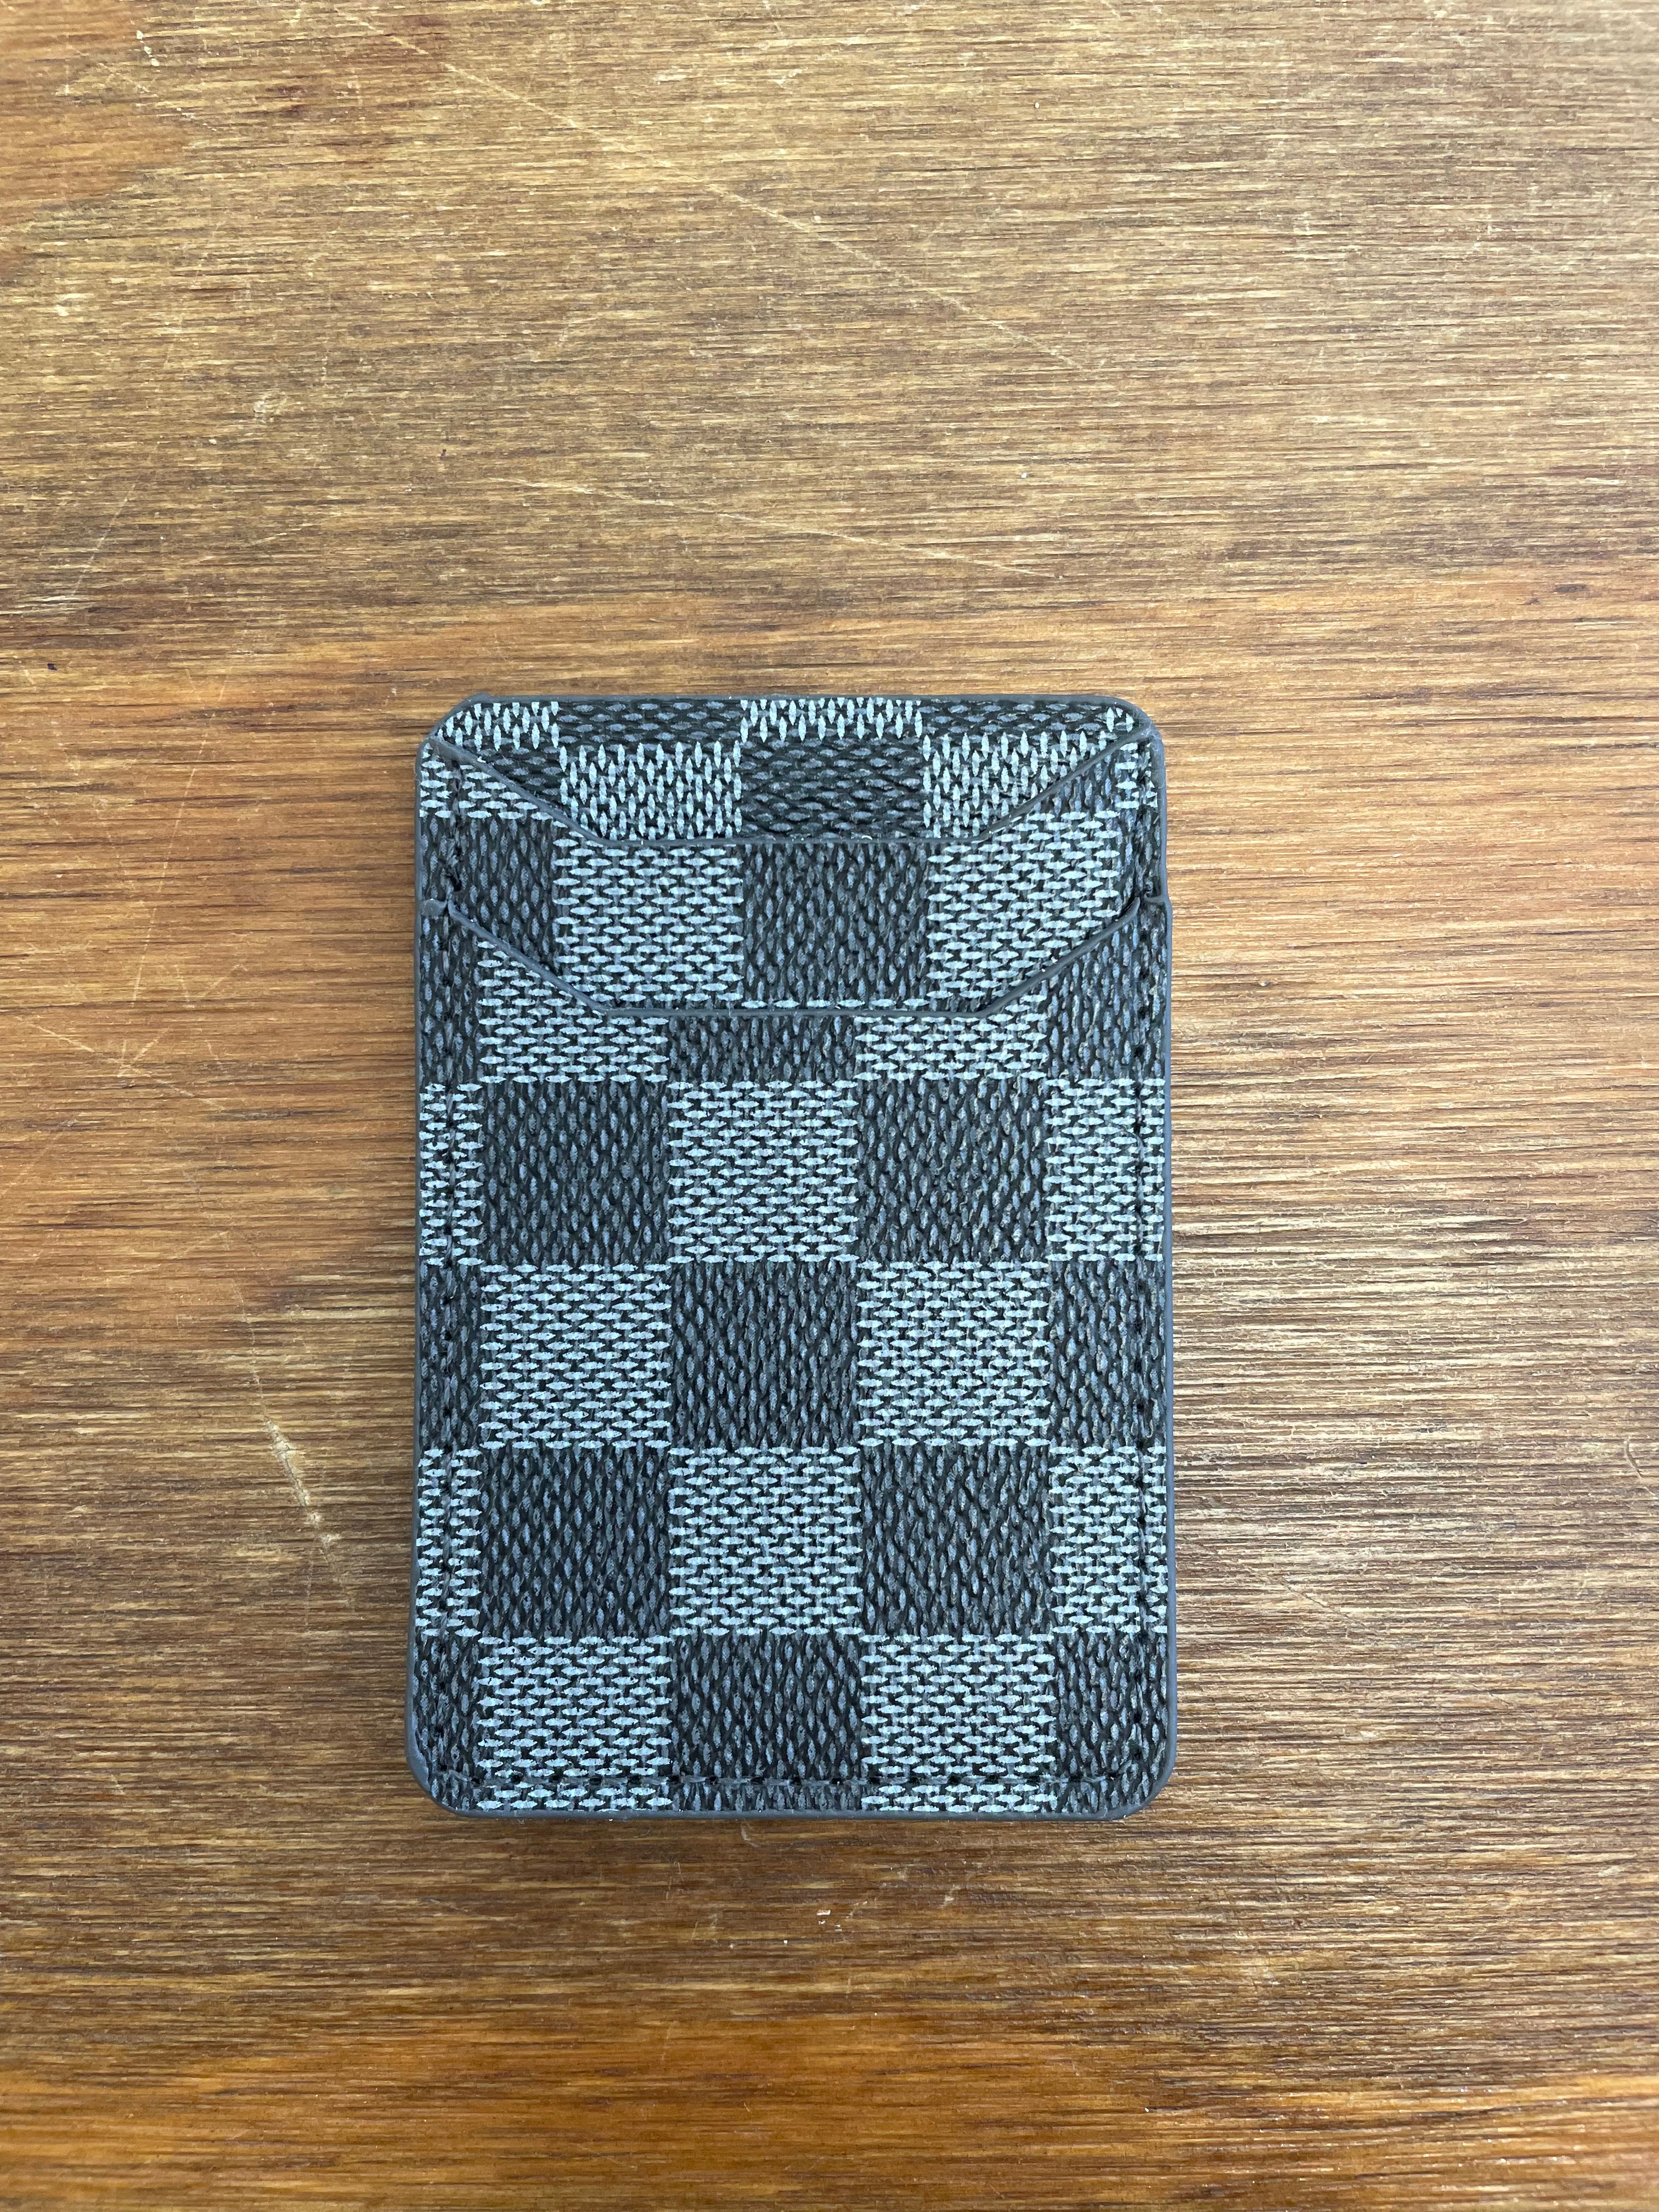 Simple Phone Wallet